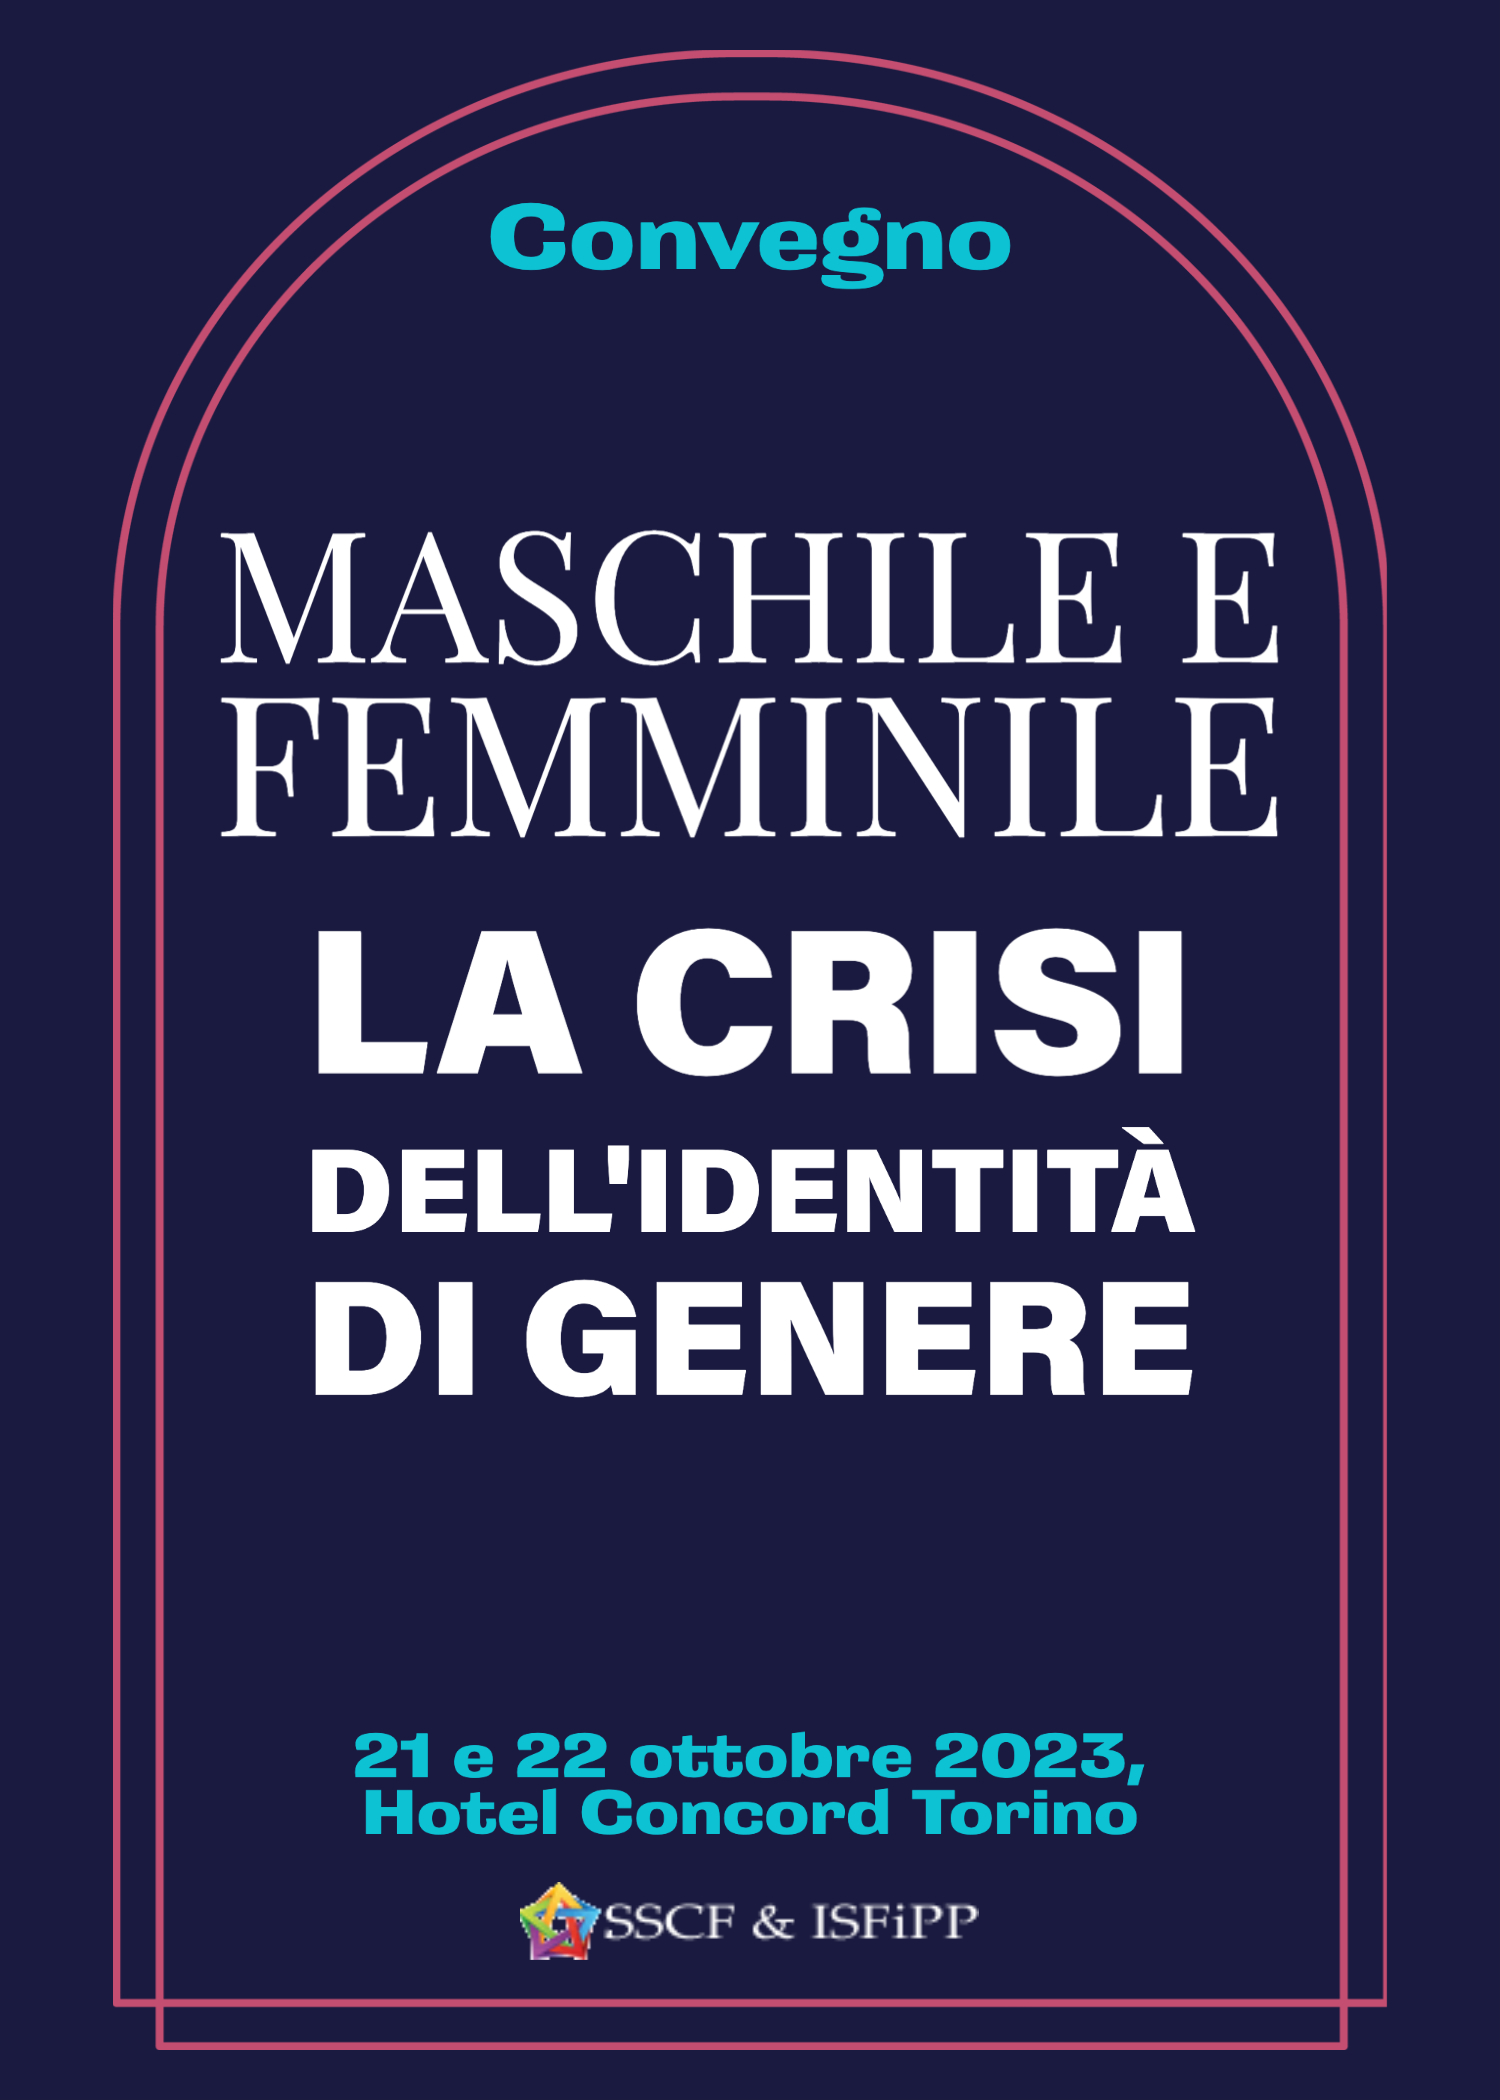 Convegno SSCF ISFIPP Maschile e Feminile, Torino